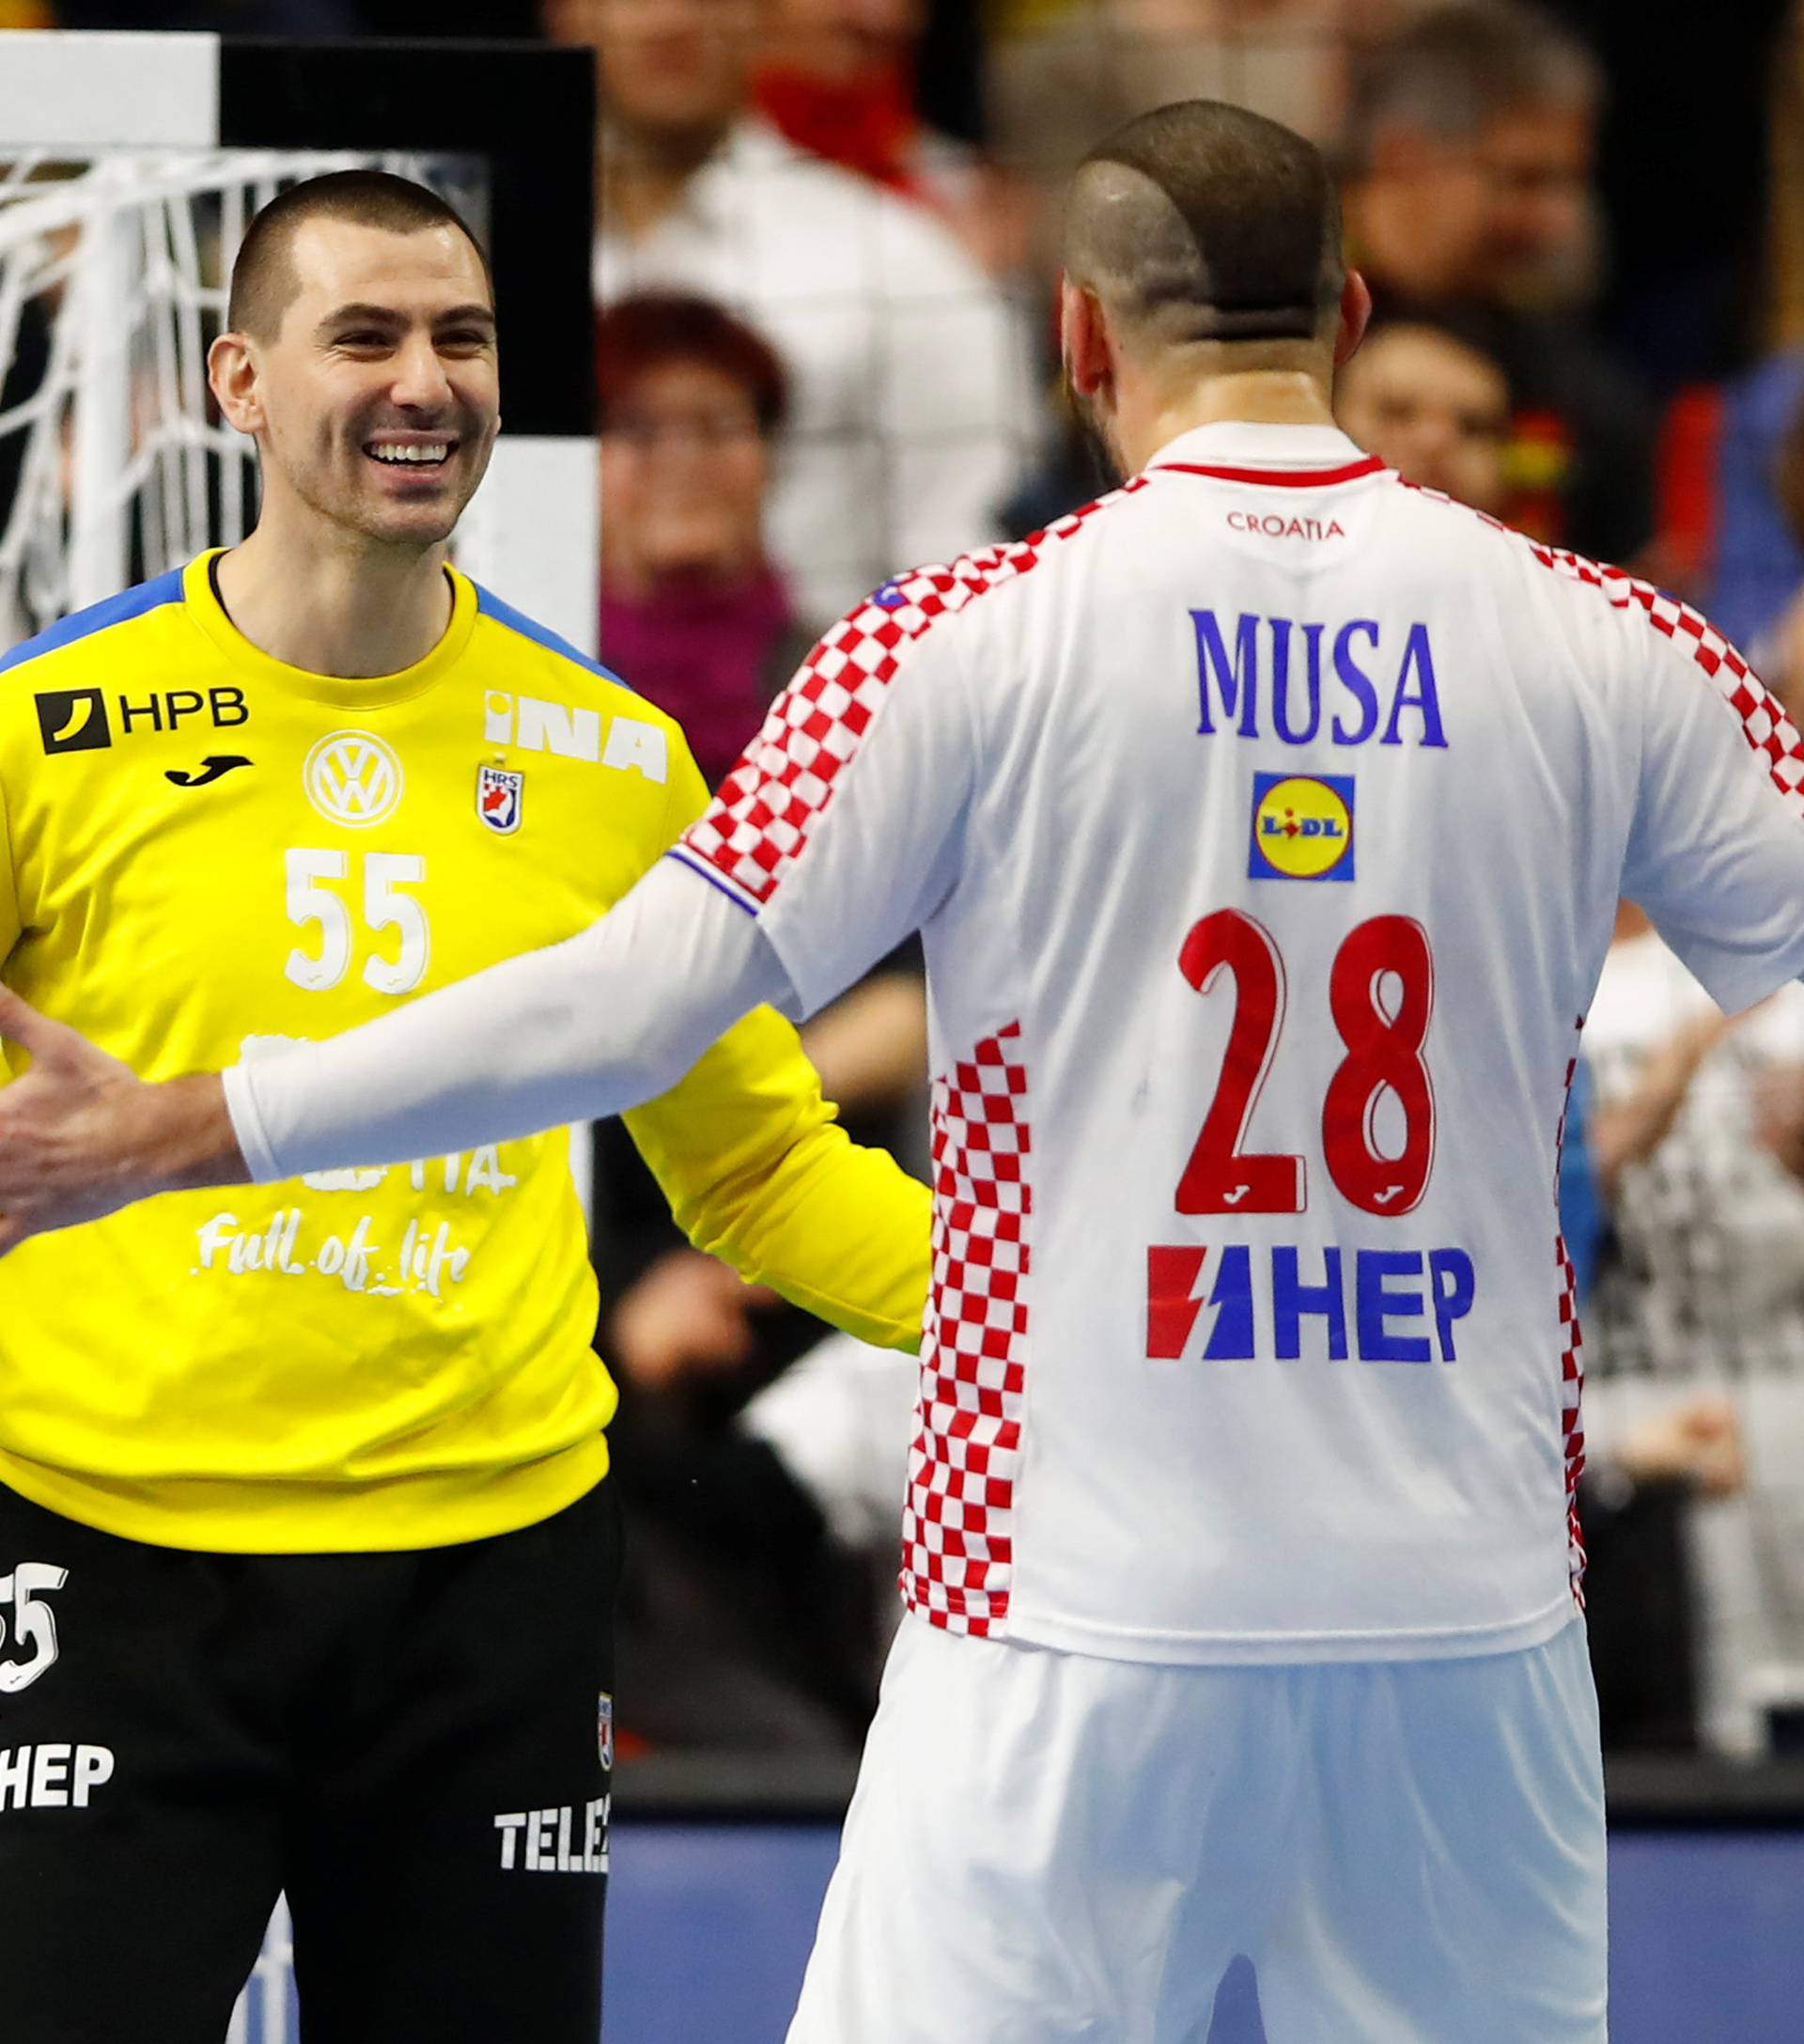 IHF Handball World Championship - Germany & Denmark 2019 - Main Round Group 1 - France v Croatia